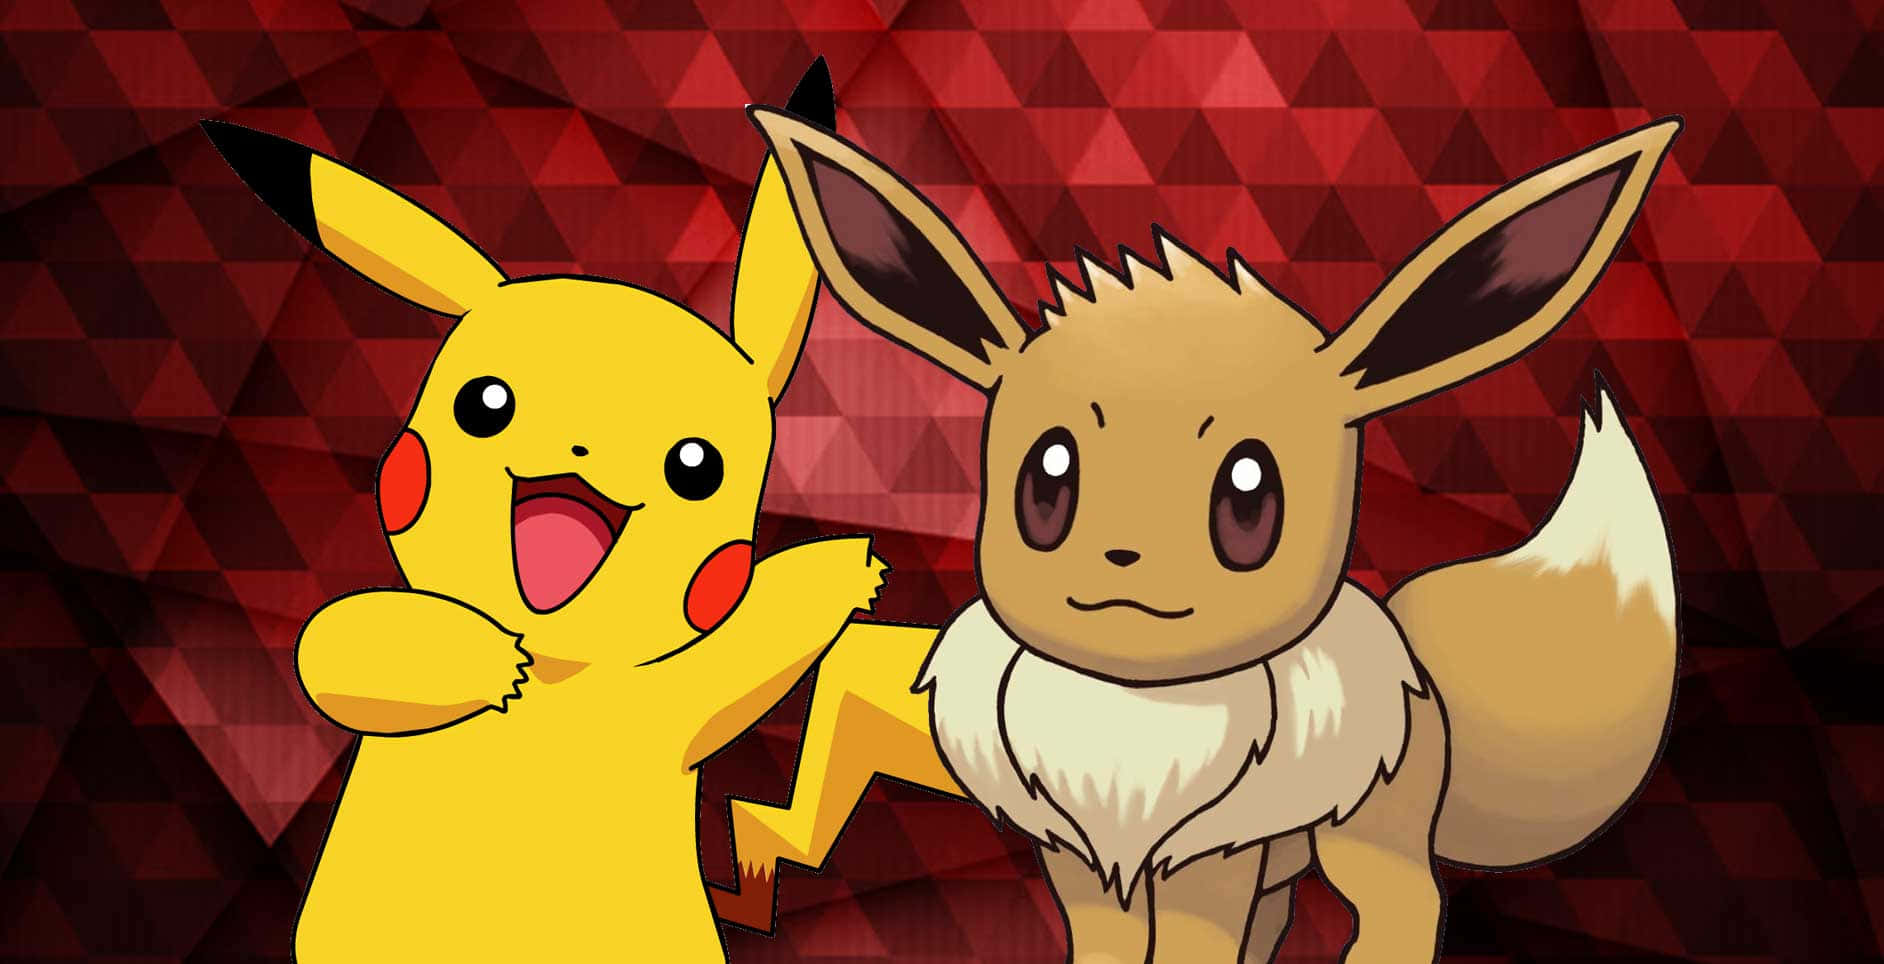 Dosde Los Personajes Más Queridos De Pokemon Abrazándose: El Tierno Pikachu Y Eevee. Fondo de pantalla